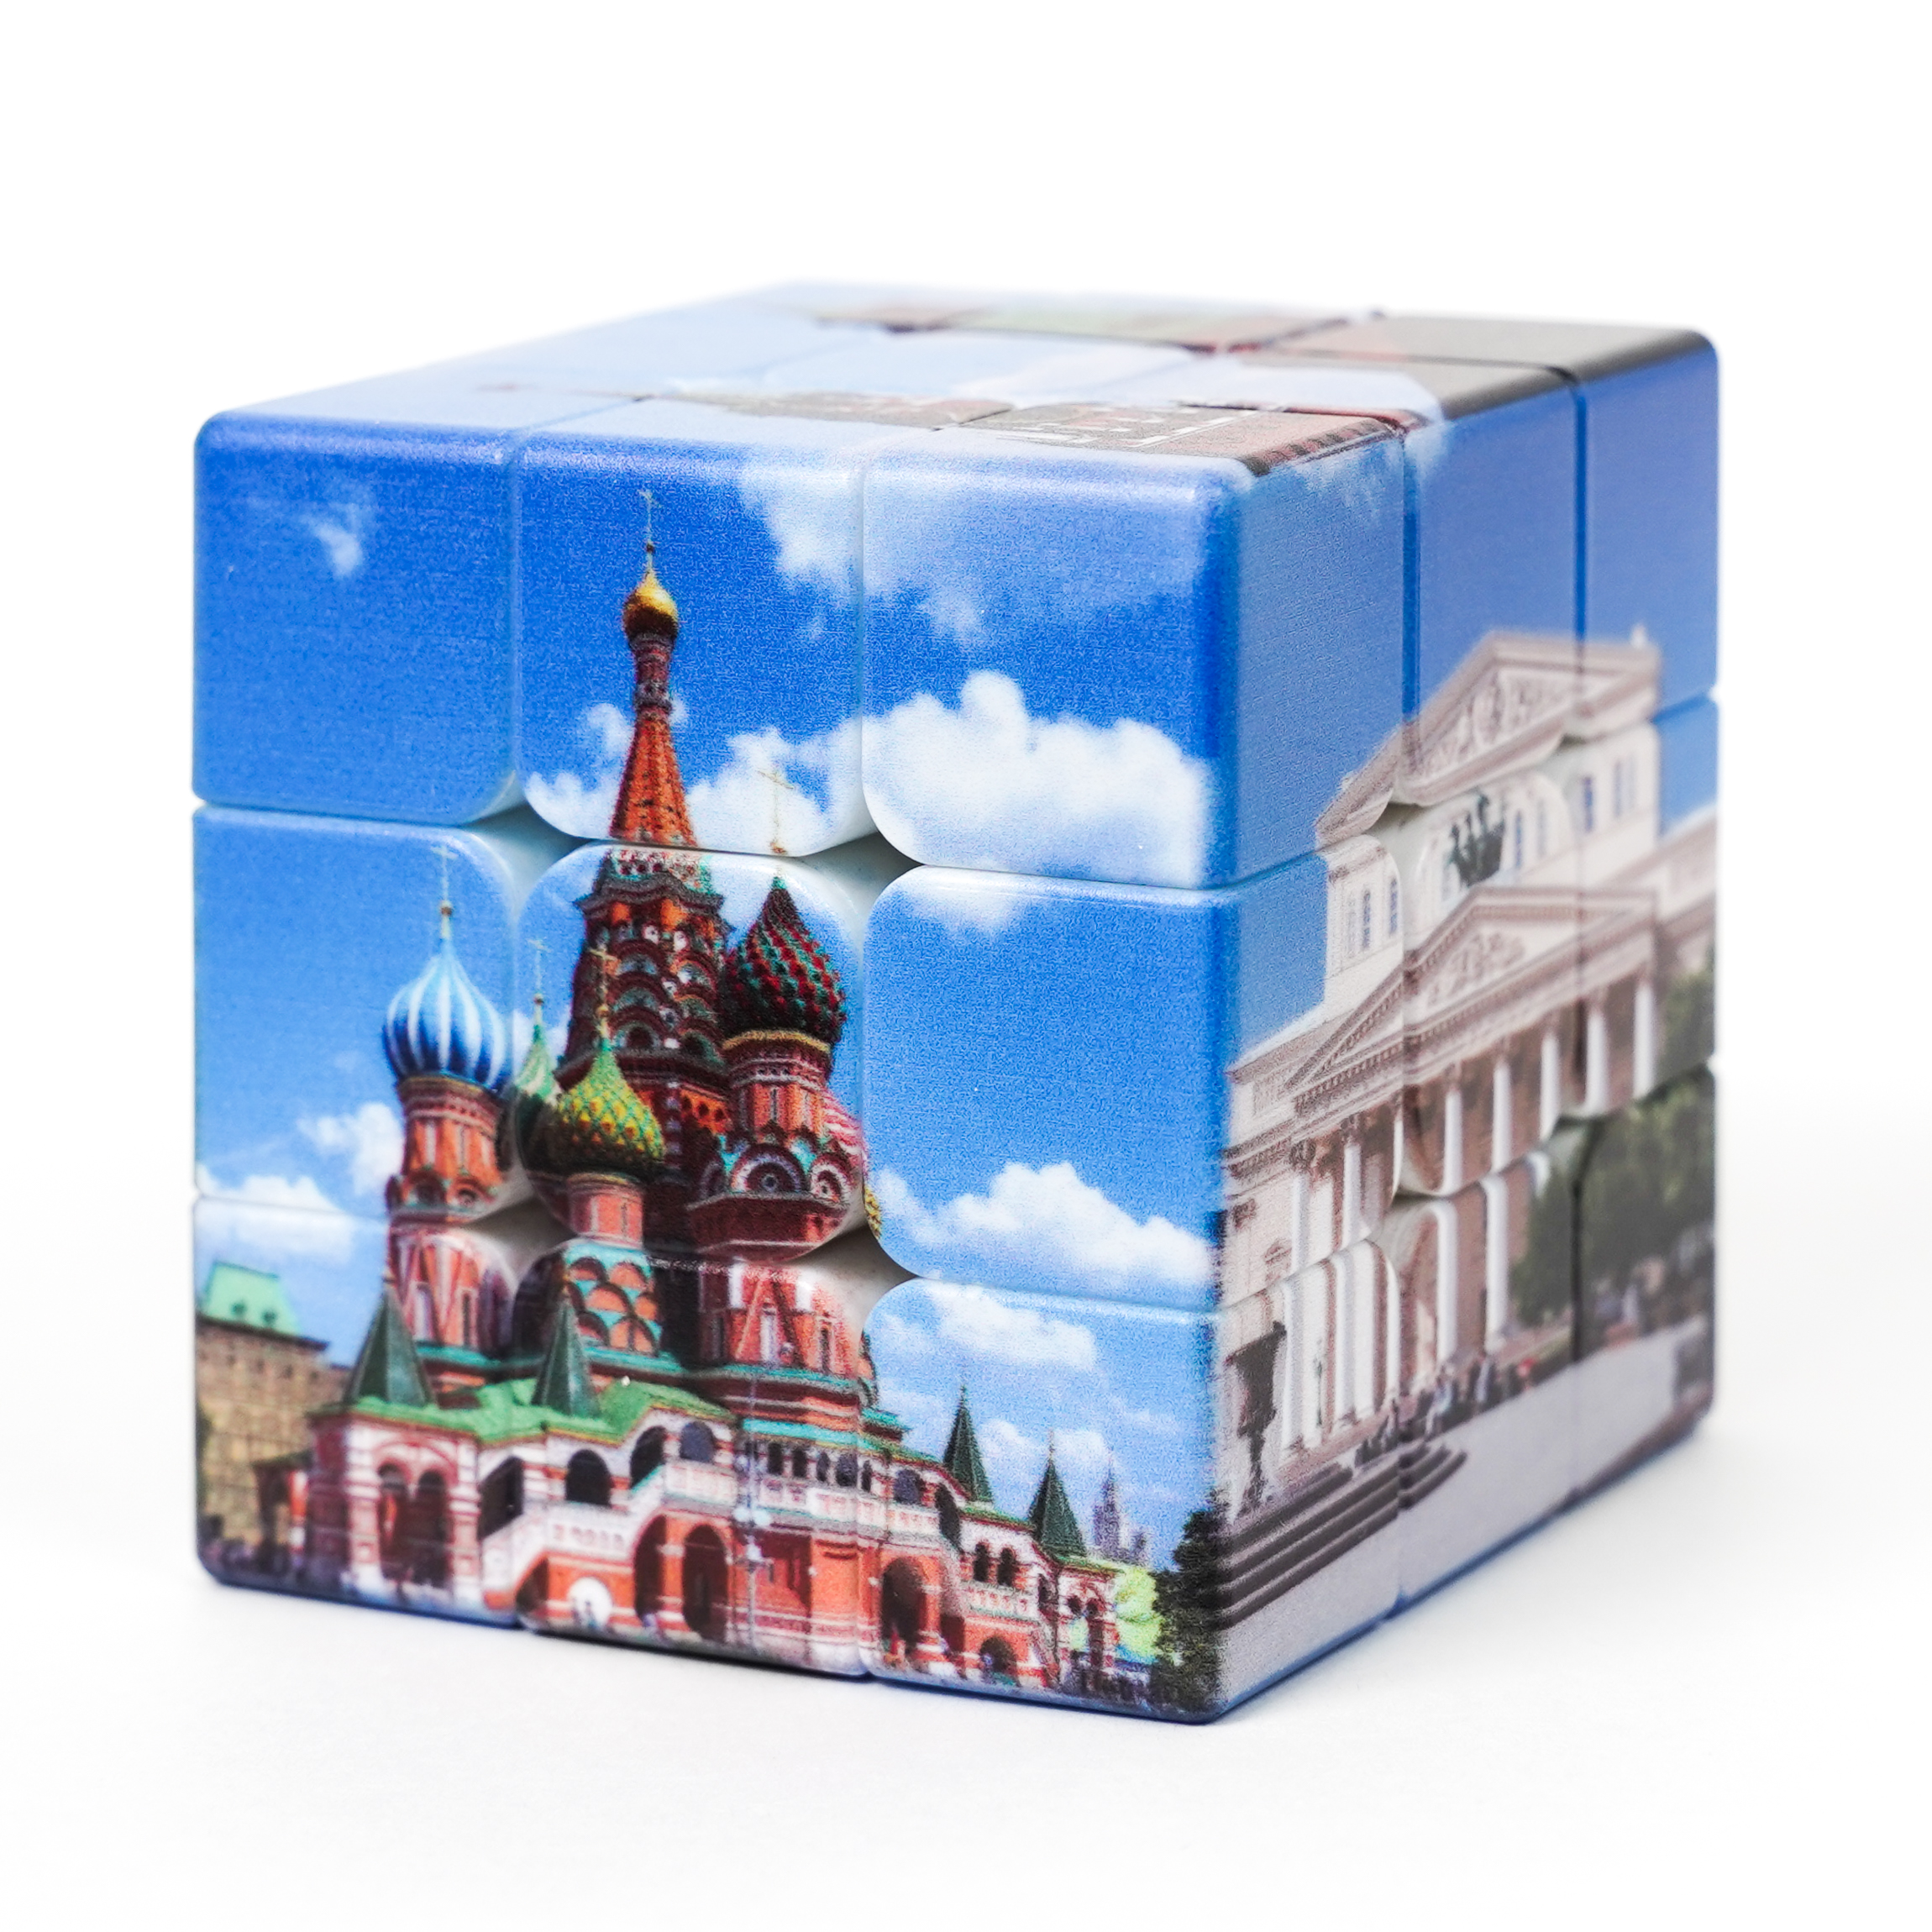 SPEEDCUBES 3x3x3 Москва (Moscow)